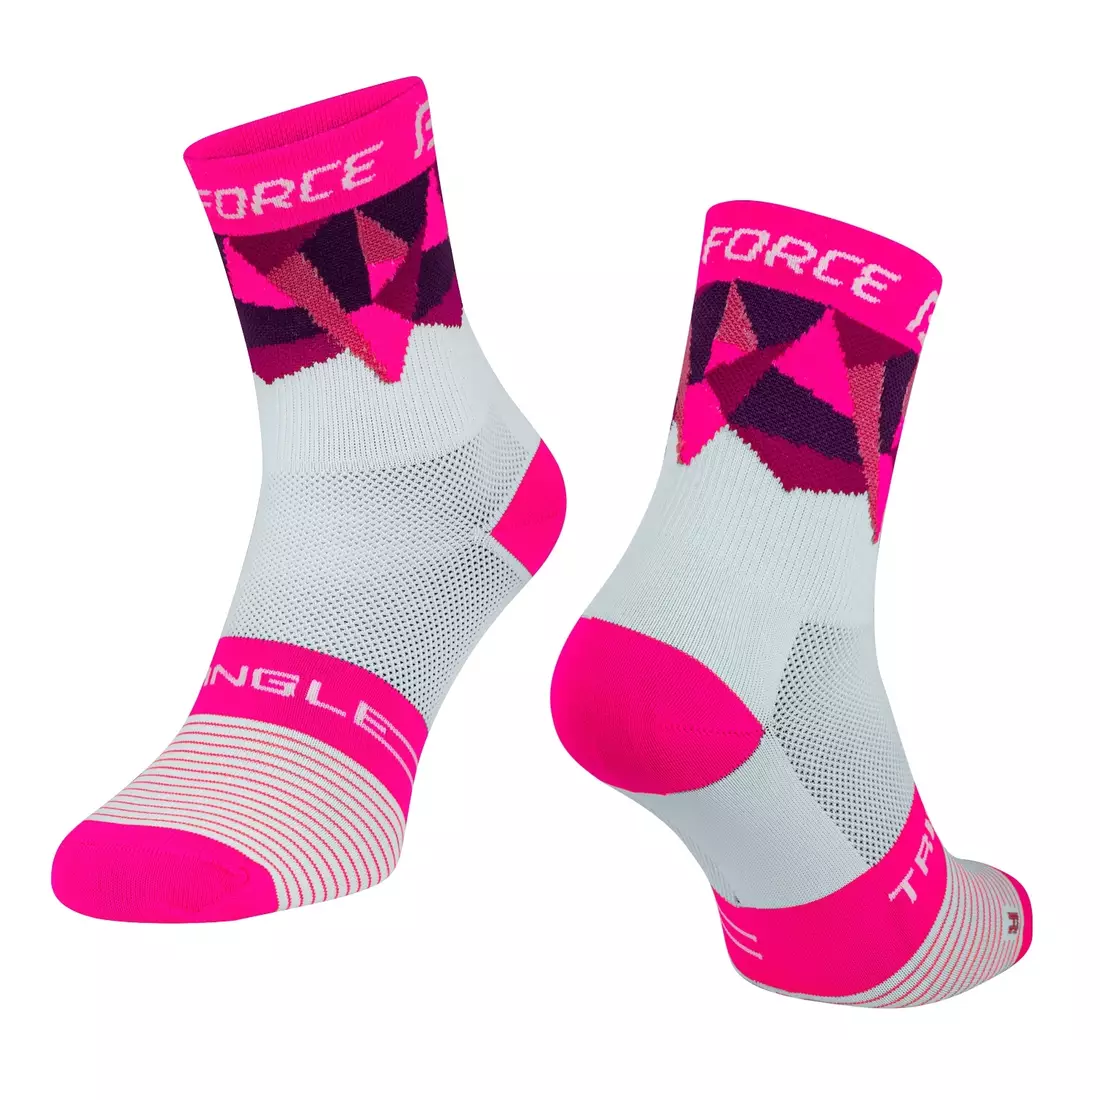 FORCE TRIANGLE kerékpáros/sport zokni, fehér és rózsaszín